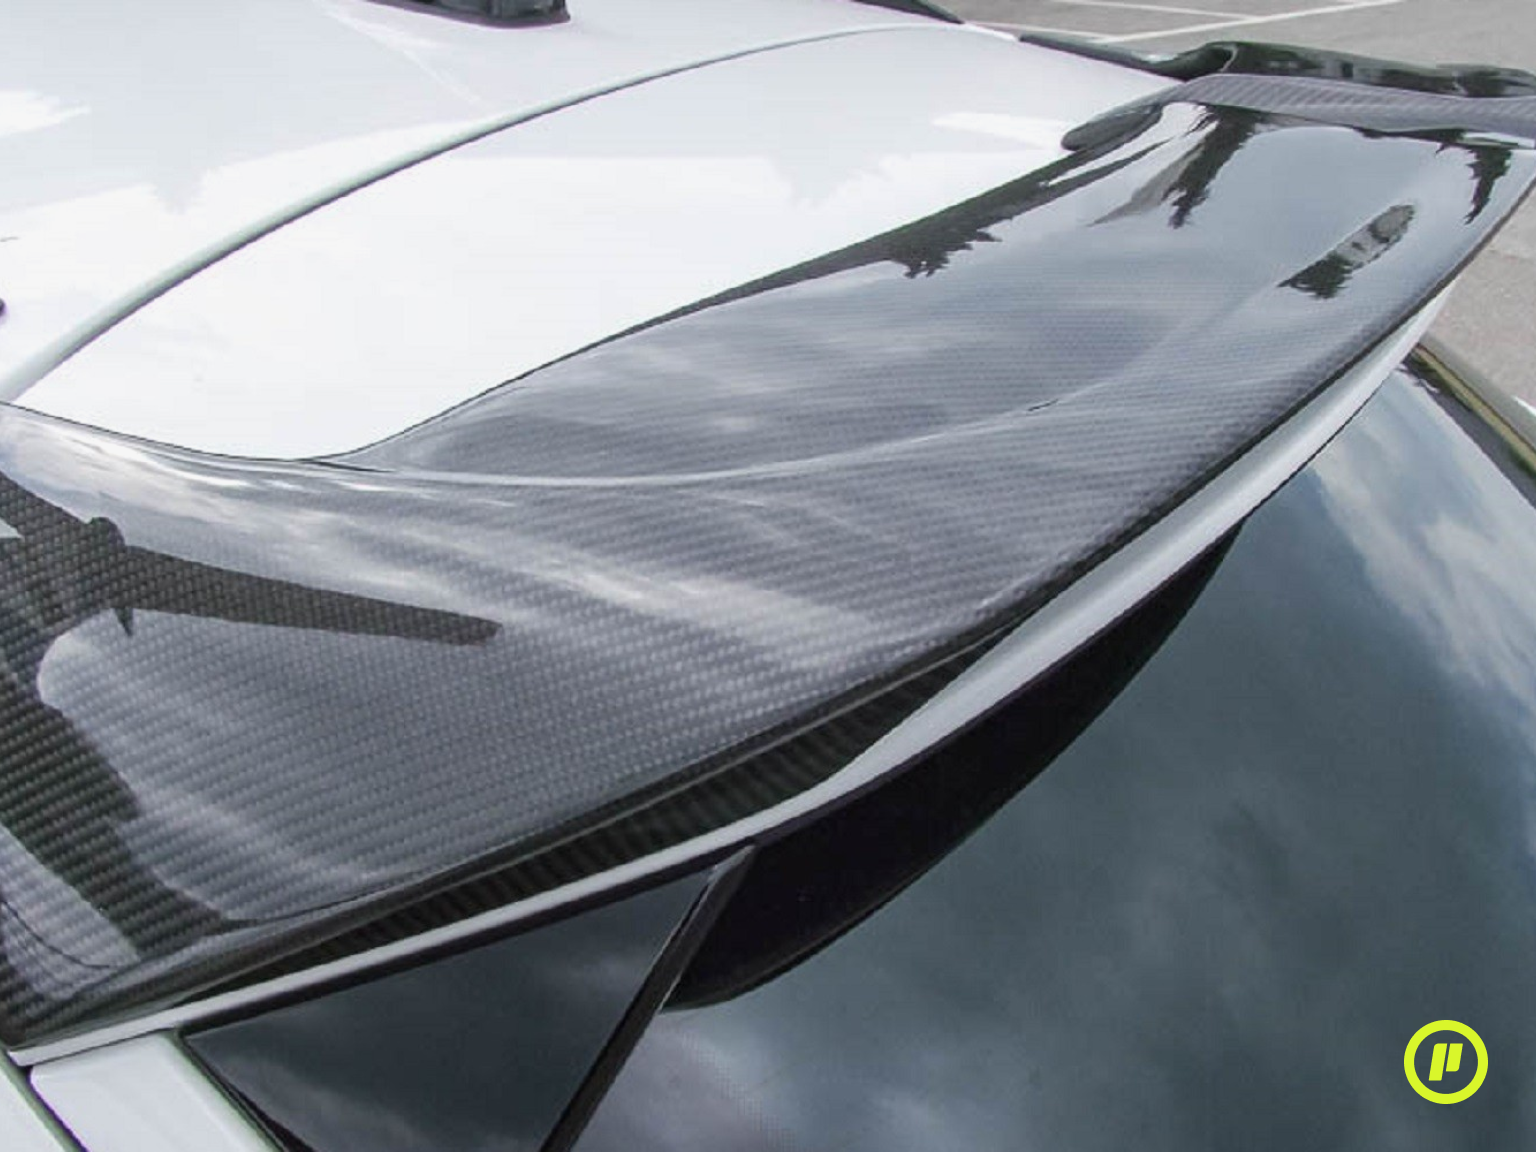 JE Design - Carbon Fiber Rear Wing Roof for Cupra Formentor (KM 2020+)